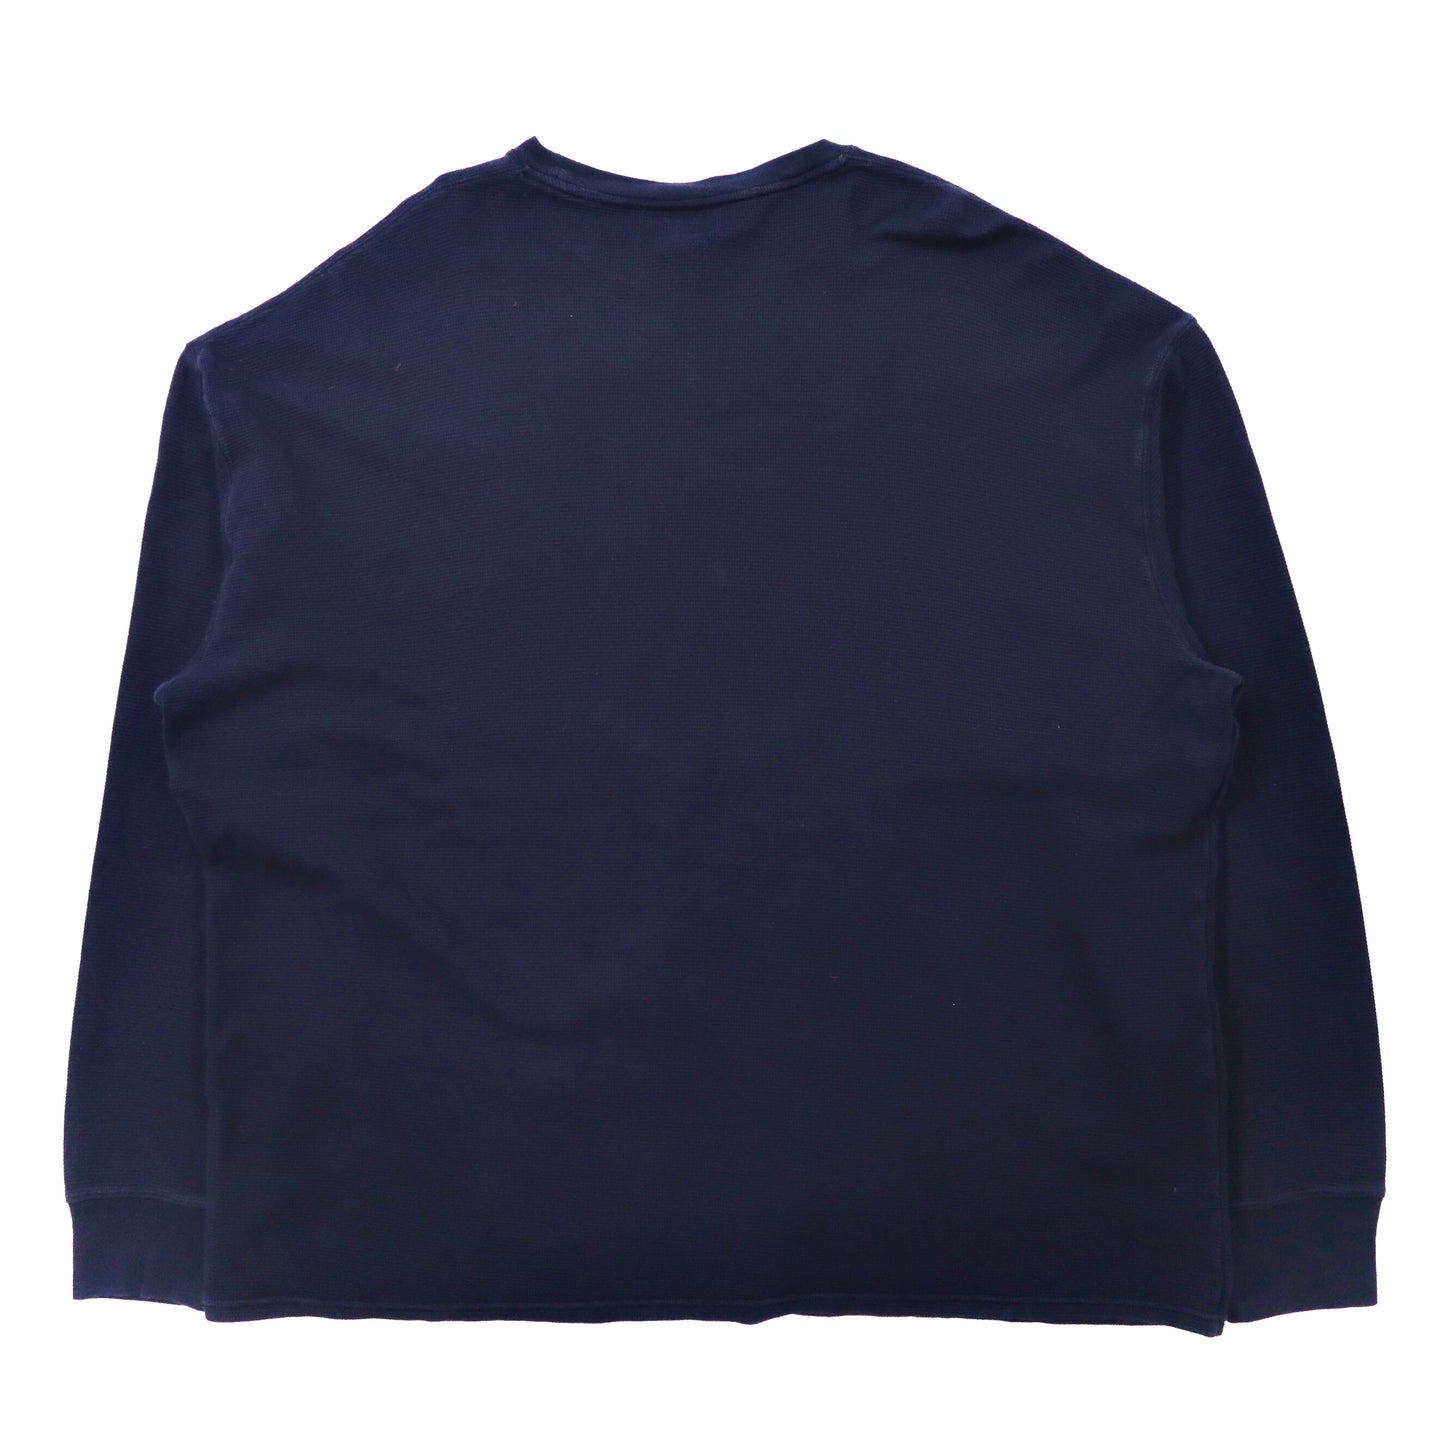 POLO RALPH LAUREN ビッグサイズ サーマル ロングスリーブTシャツ 4XL ネイビー コットン スモールポニー刺繍